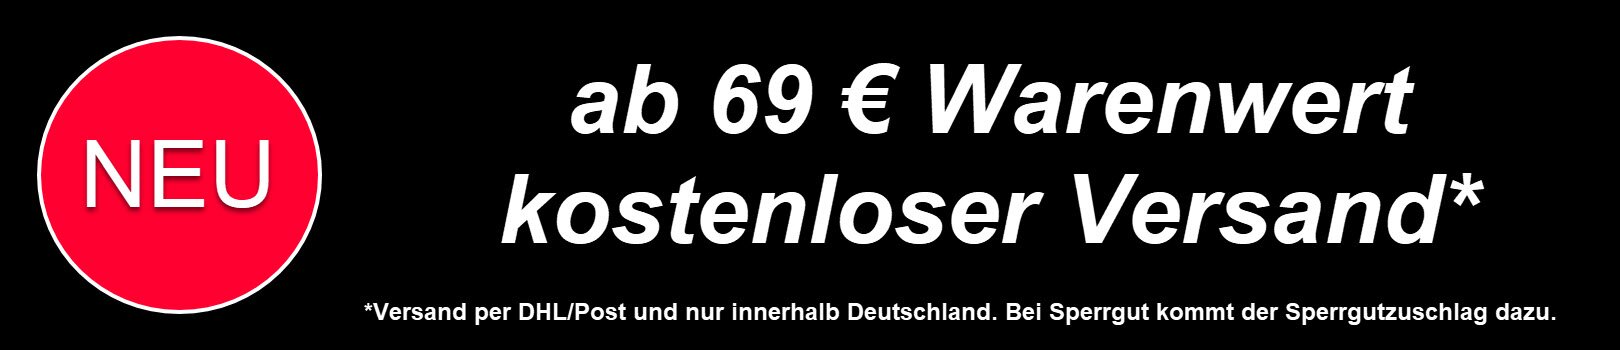 NEU - ab 69 EUR Warenwert kostenloser Versand mit DHL/Post innerhalb DE (außer Sperrgut)